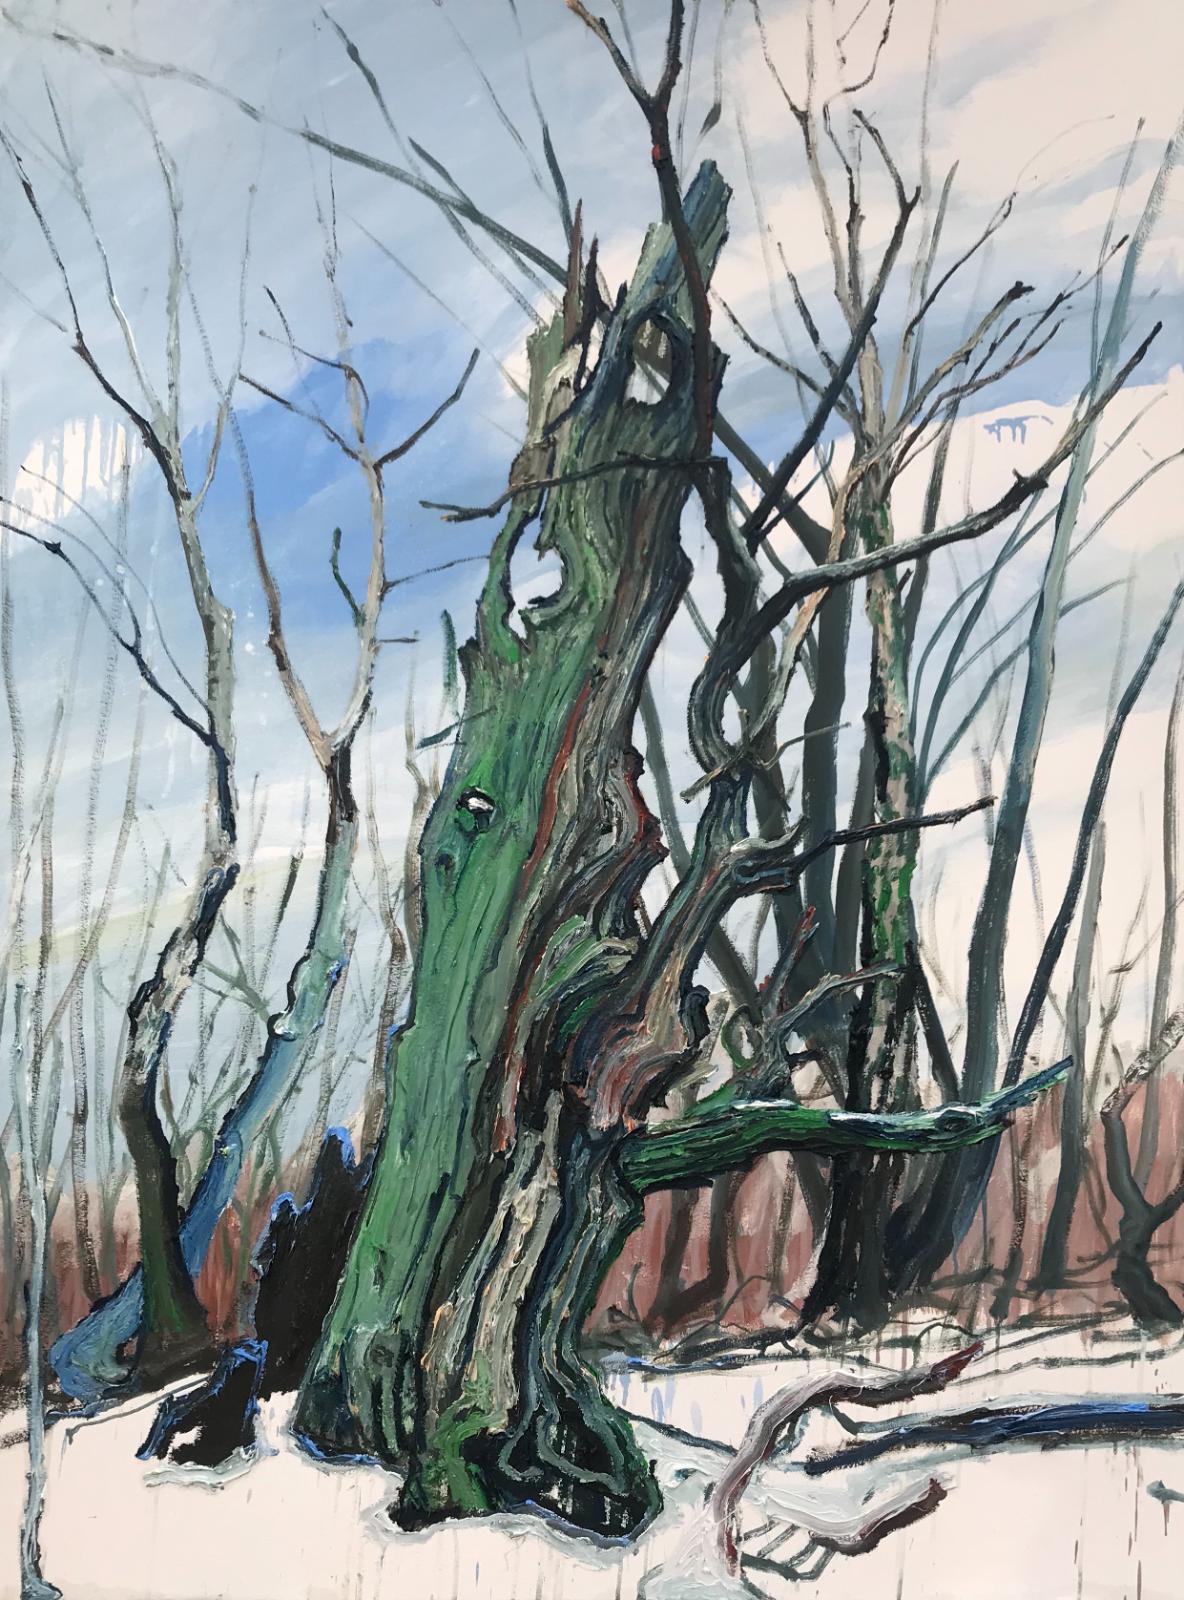 Helge Hommes, DU Baumporträt im Reinhardswald, plein air 2019, Öl auf Leinwand, 160 x 120cm